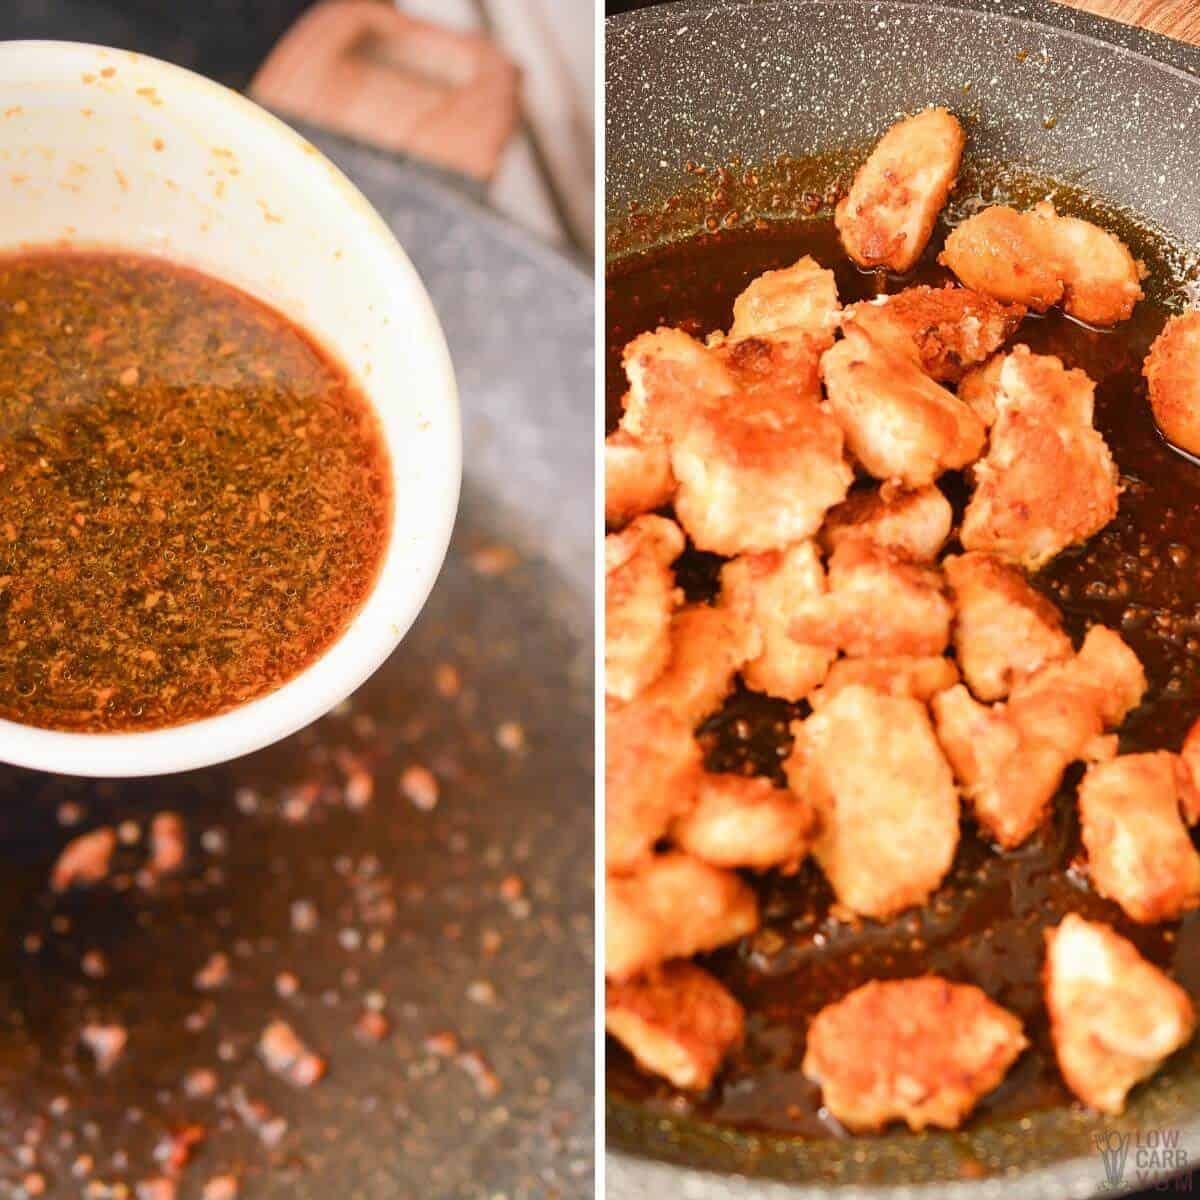 thicken sauce and add chicken to skillet